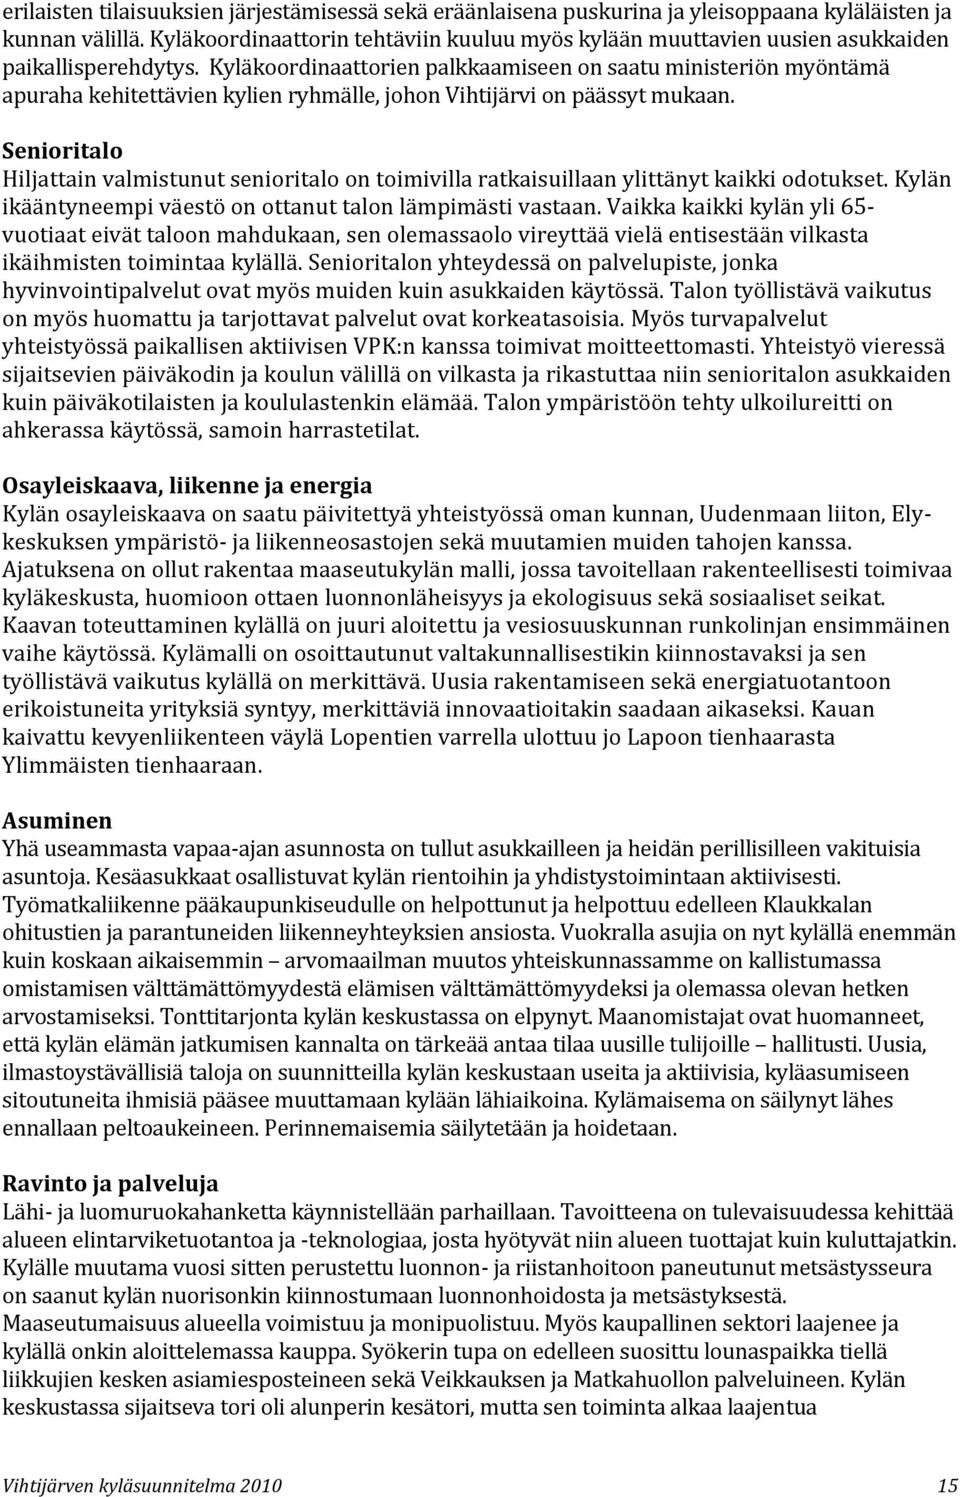 Kyläkoordinaattorien palkkaamiseen on saatu ministeriön myöntämä apuraha kehitettävien kylien ryhmälle, johon Vihtijärvi on päässyt mukaan.